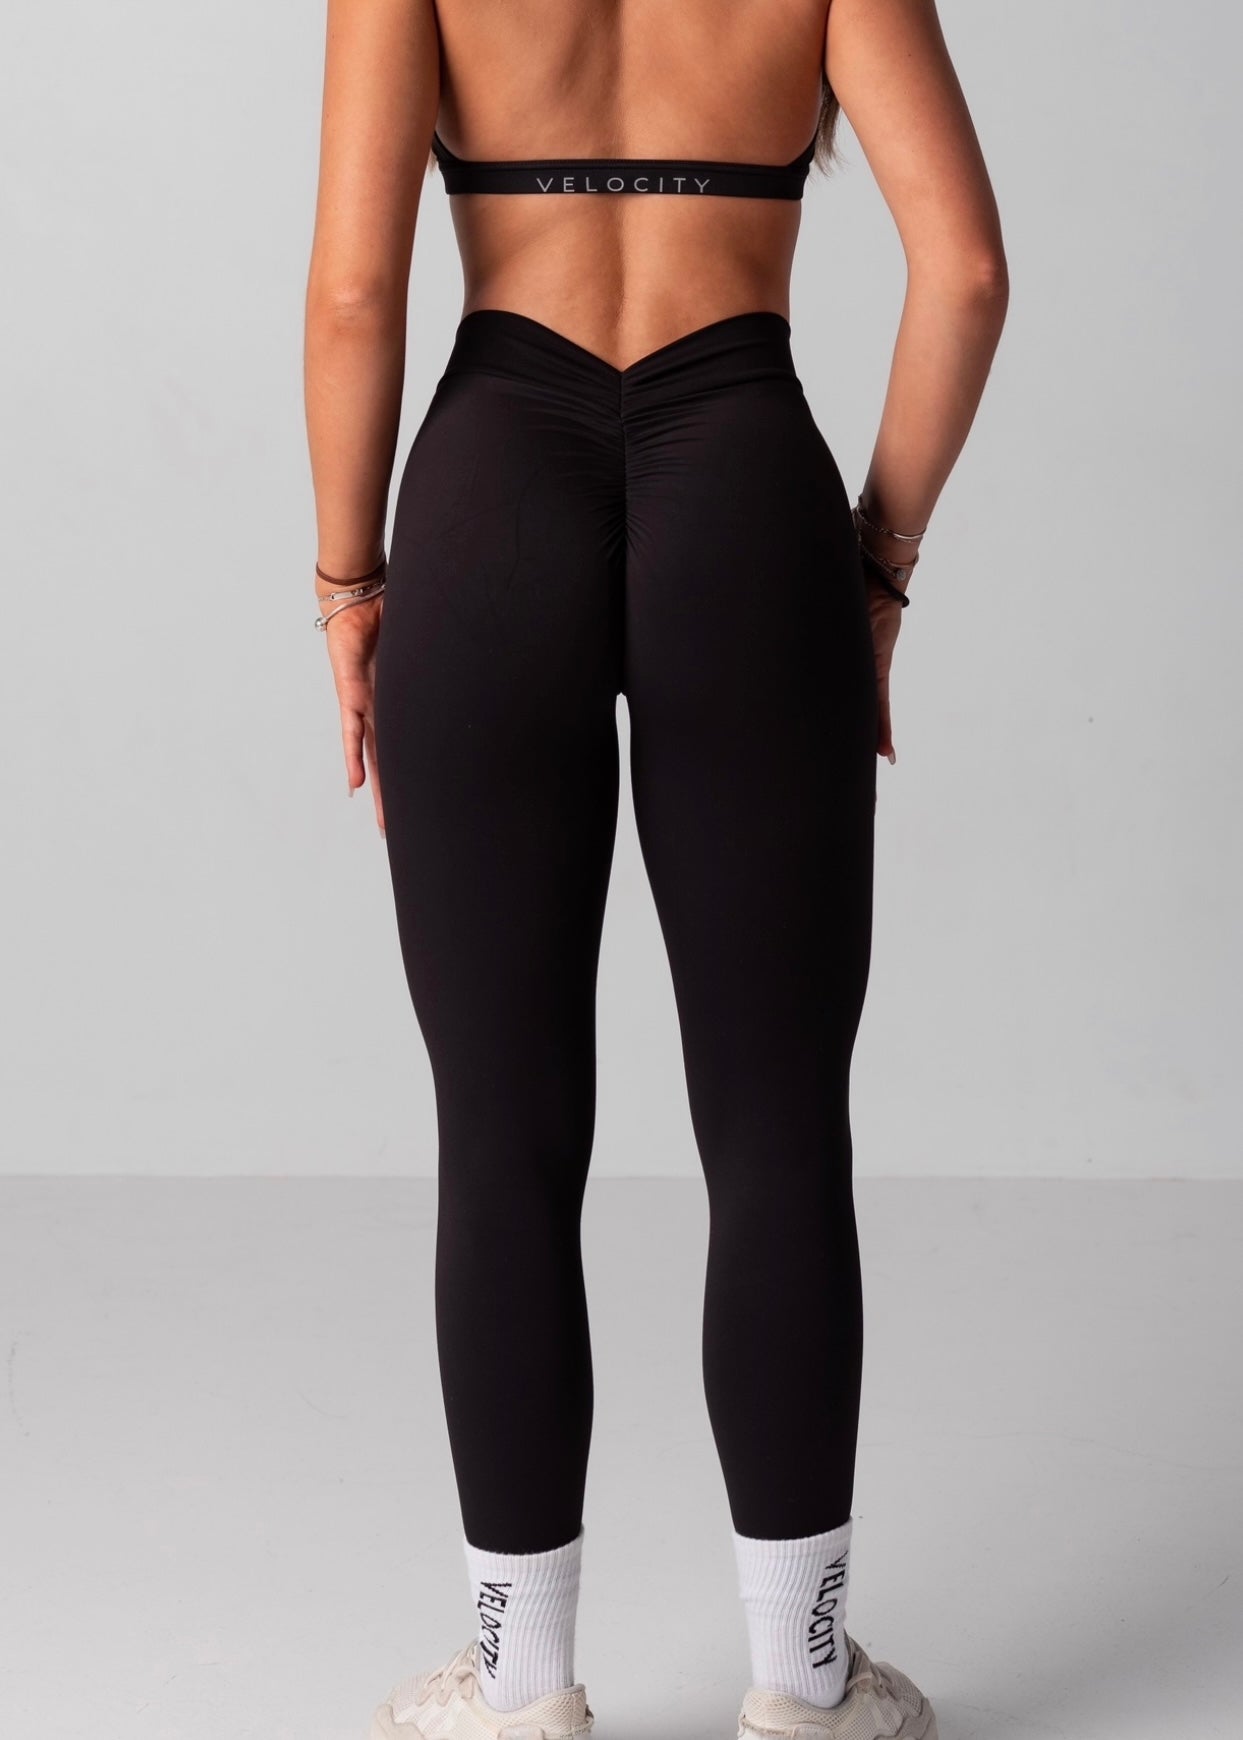 Velocity activewear v back scrunch leggings size - Depop